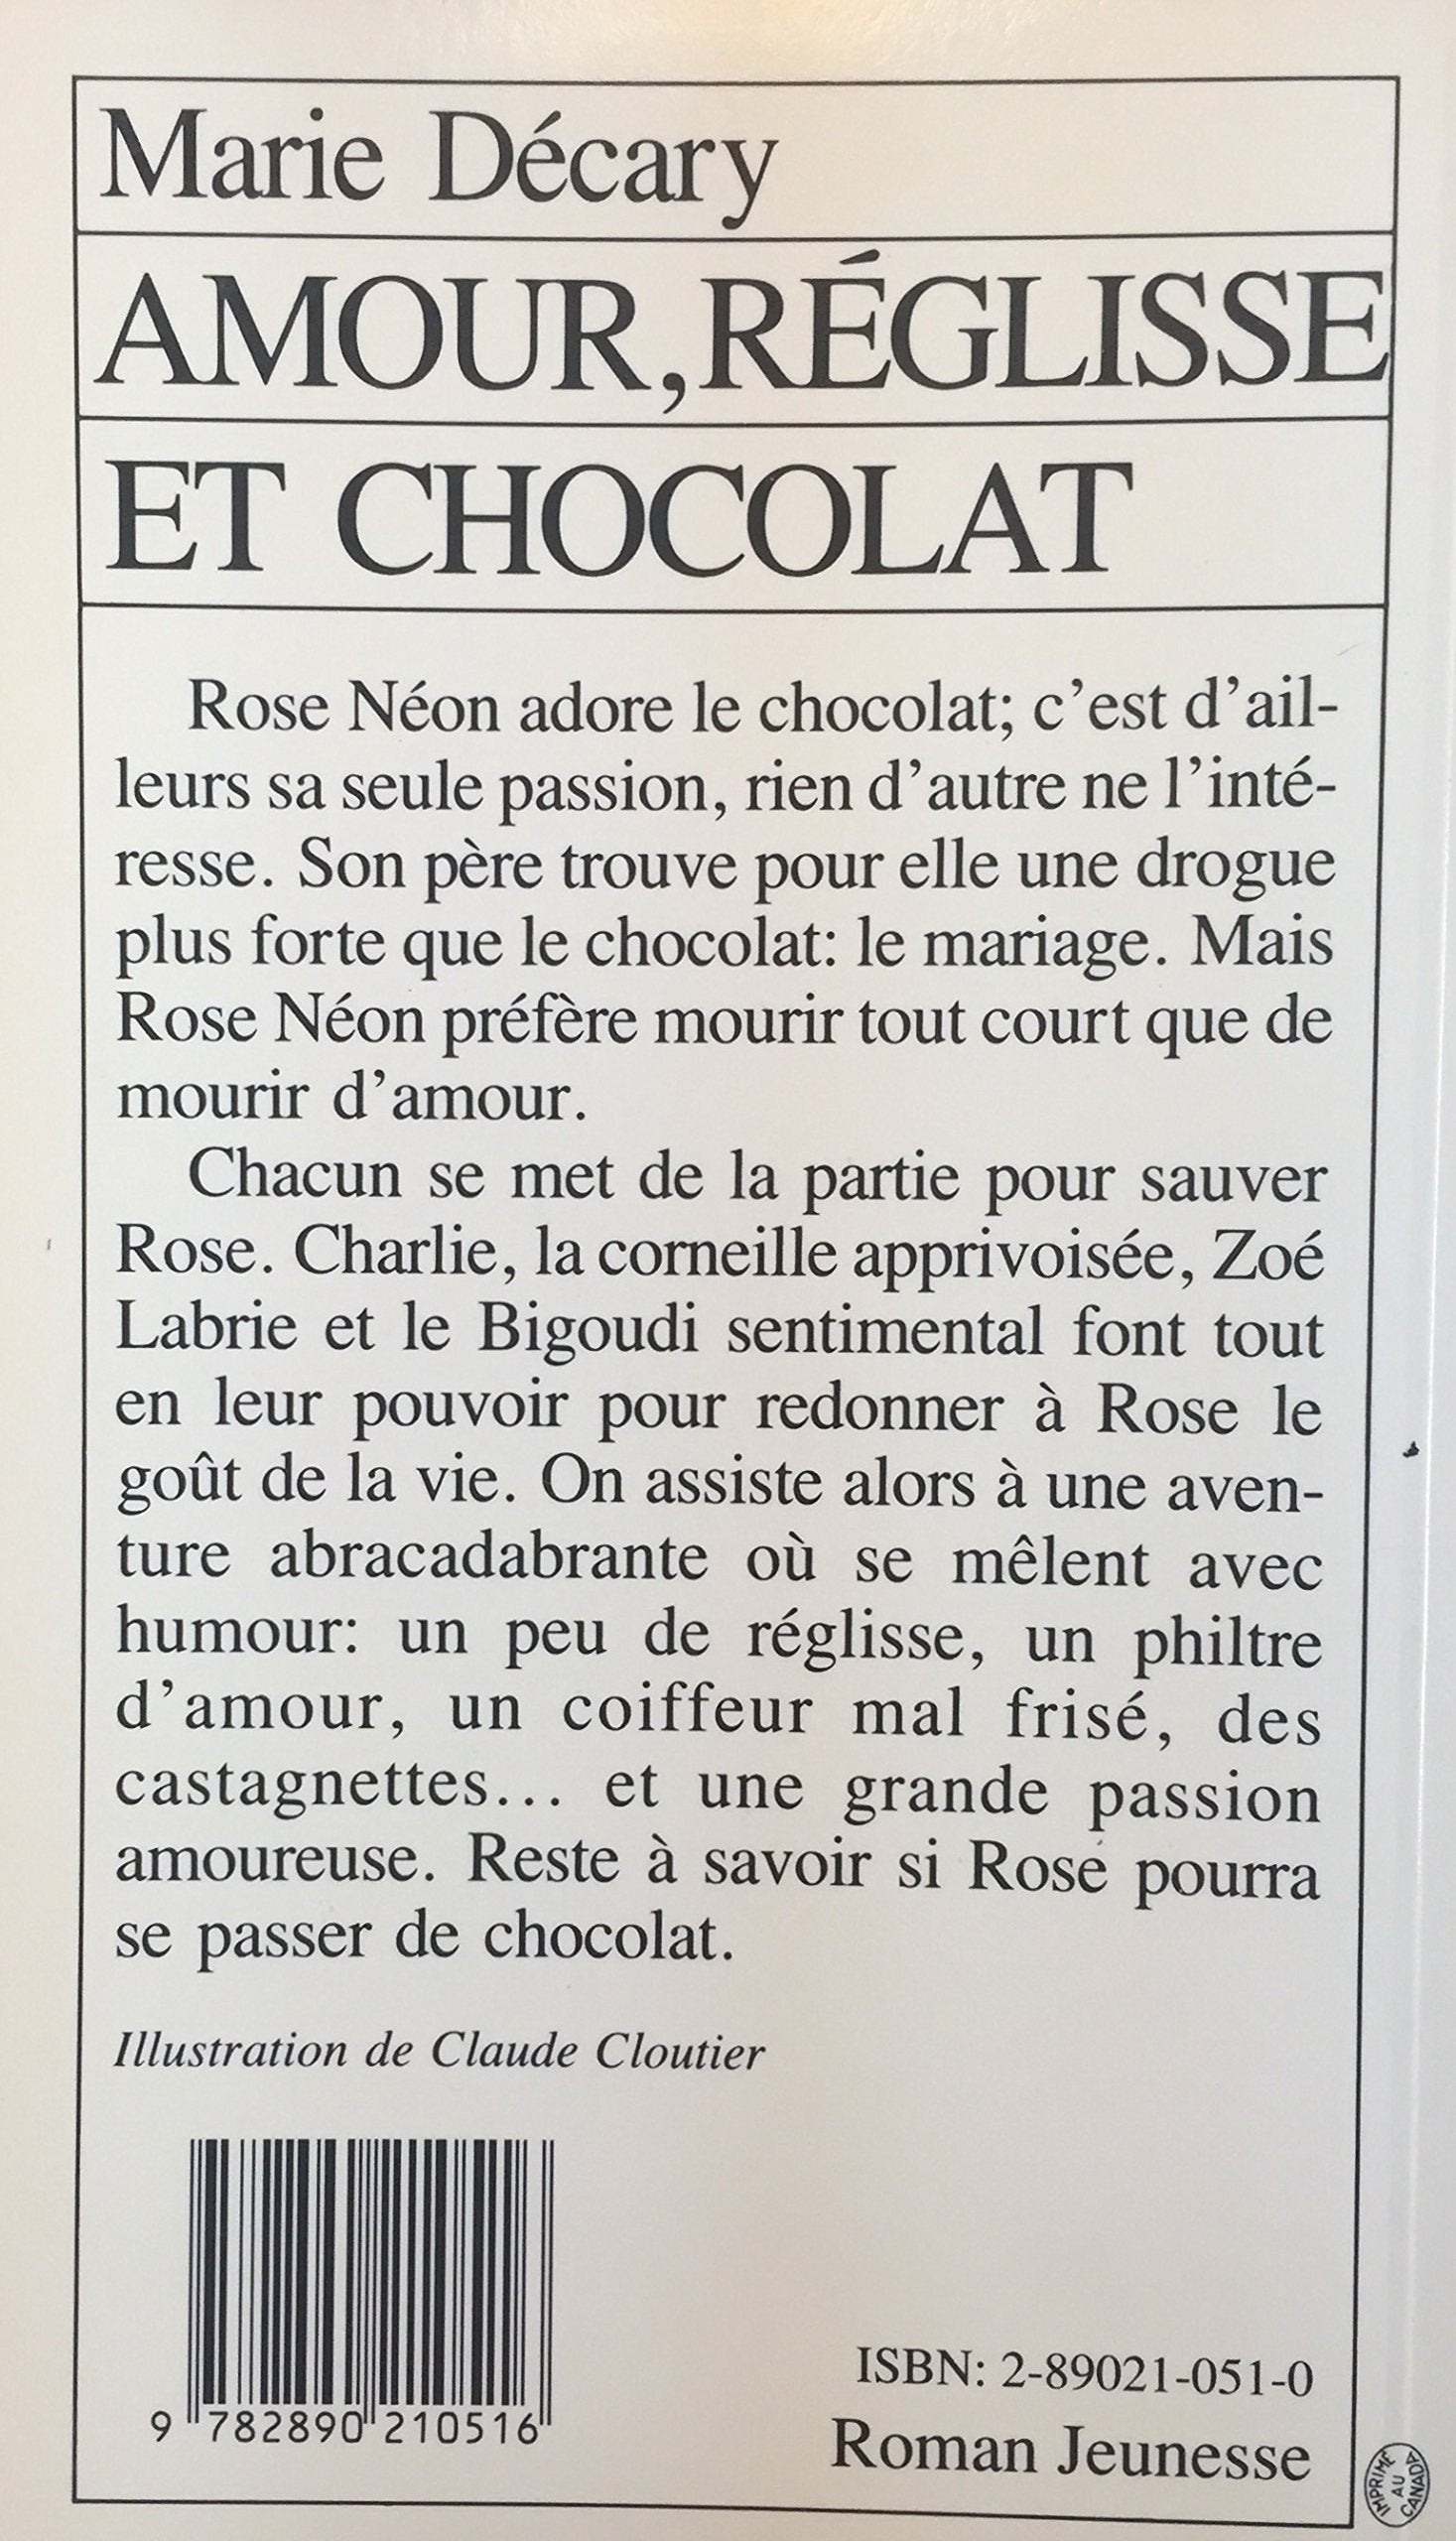 Amour, réglisse et chocolat (Marie Décary)